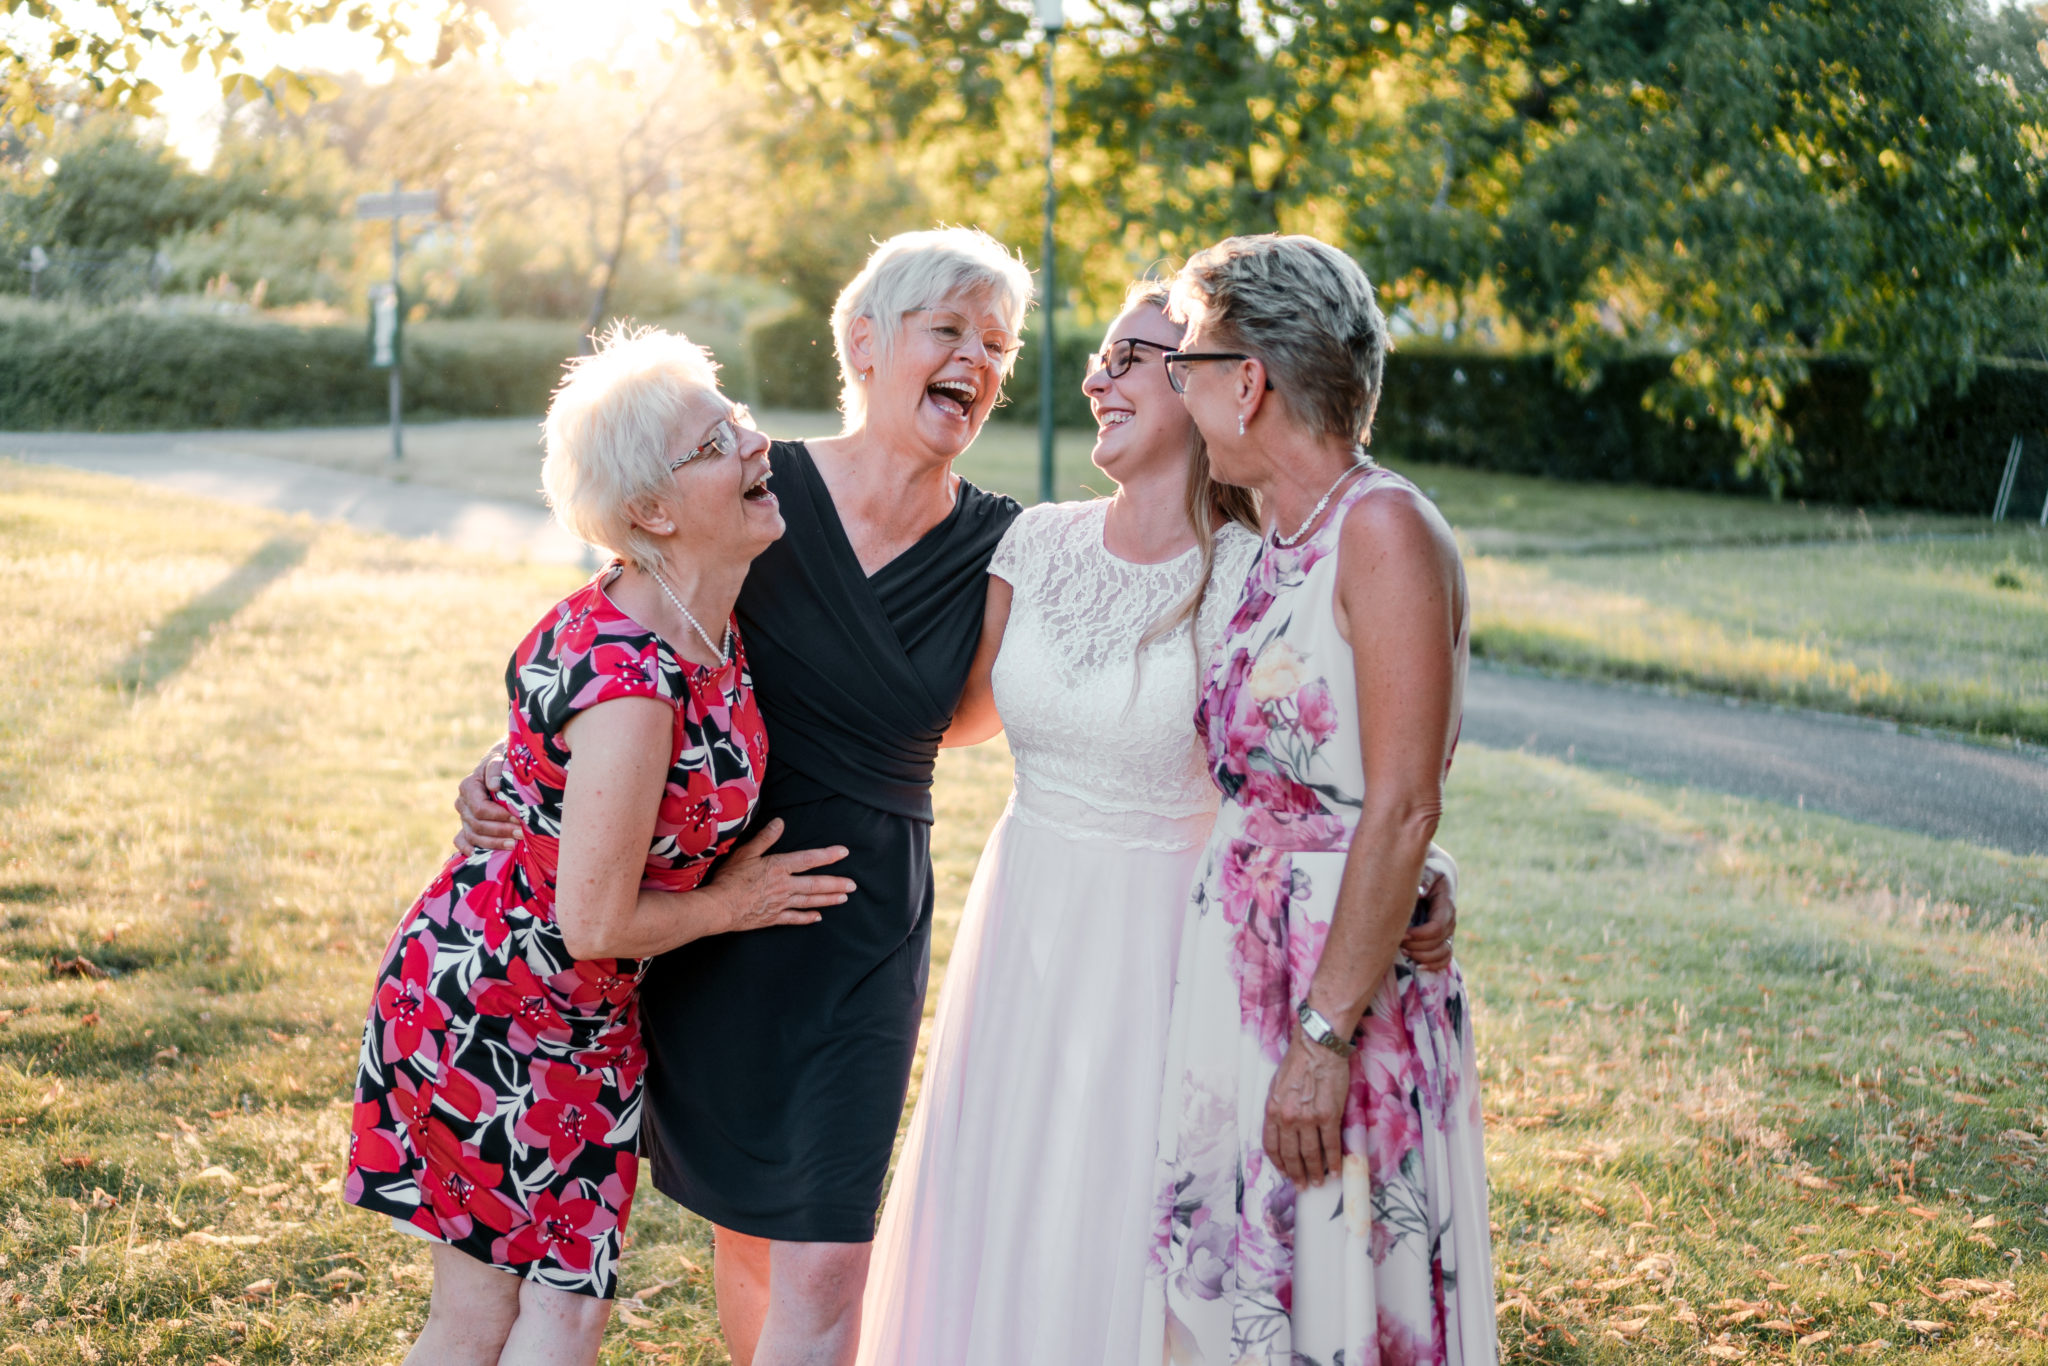 Familienfoto bei Brautshooting, alle lachen und sind glücklich